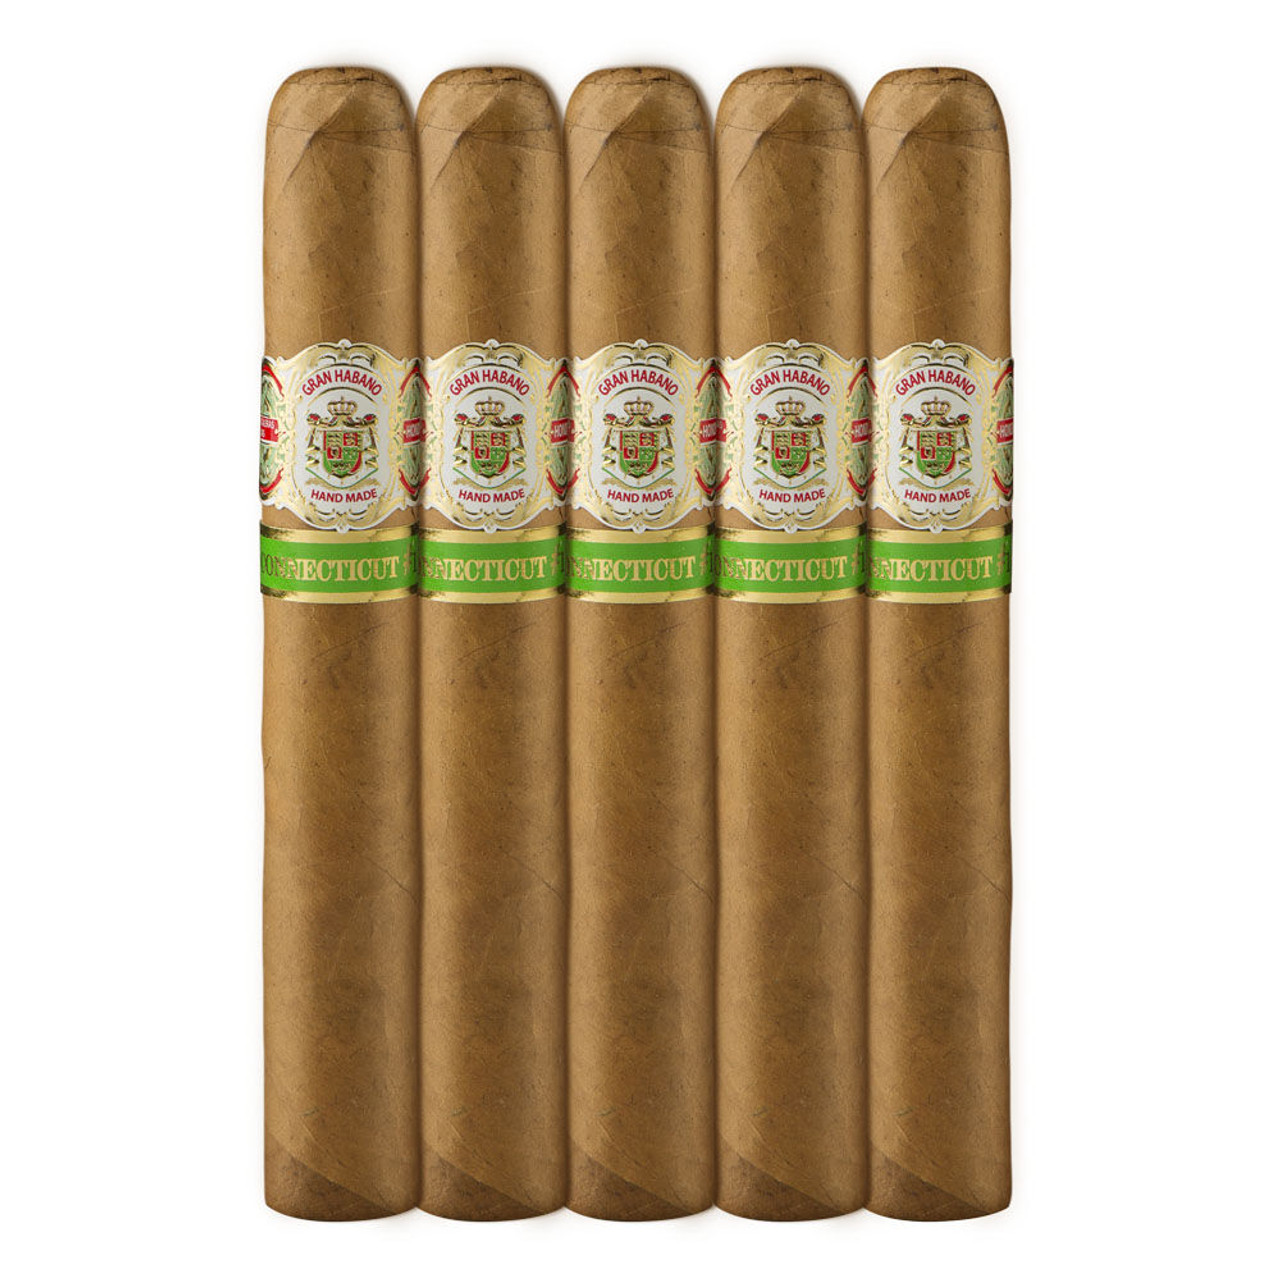 Gran Habano #1 Connecticut Gran Robusto Cigars - 6 x 54 (Pack of 5)